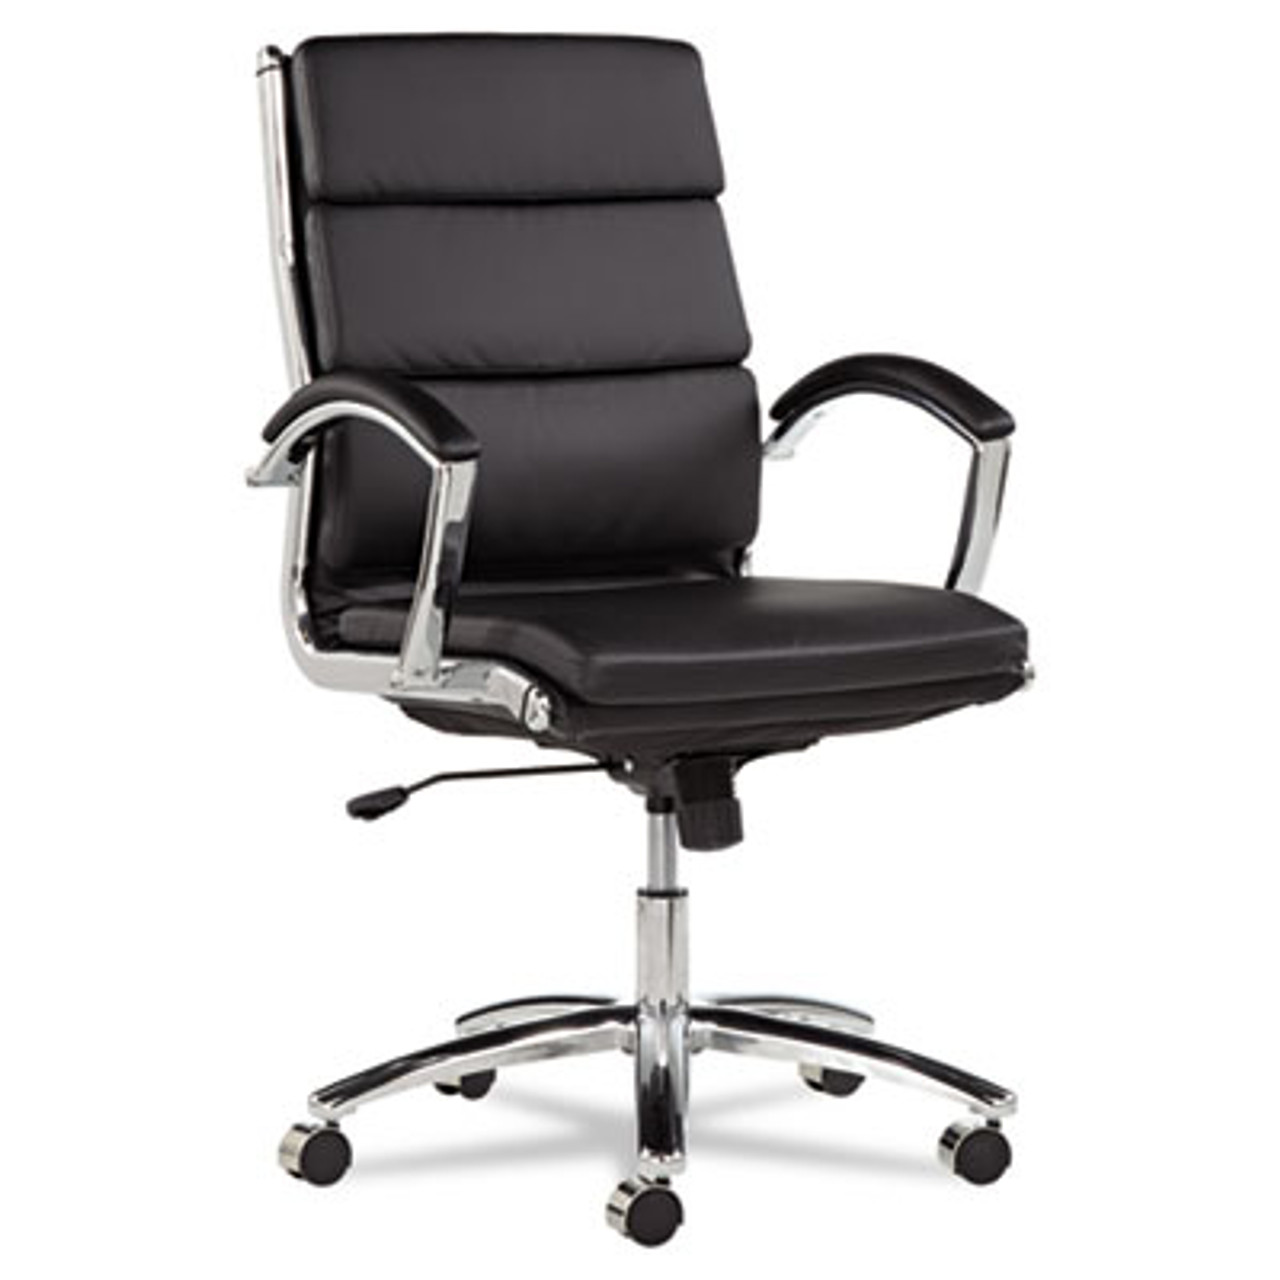 Neratoli Series Mid-Back Swivel/Tilt Chair, Black Leather, Chrome Frame